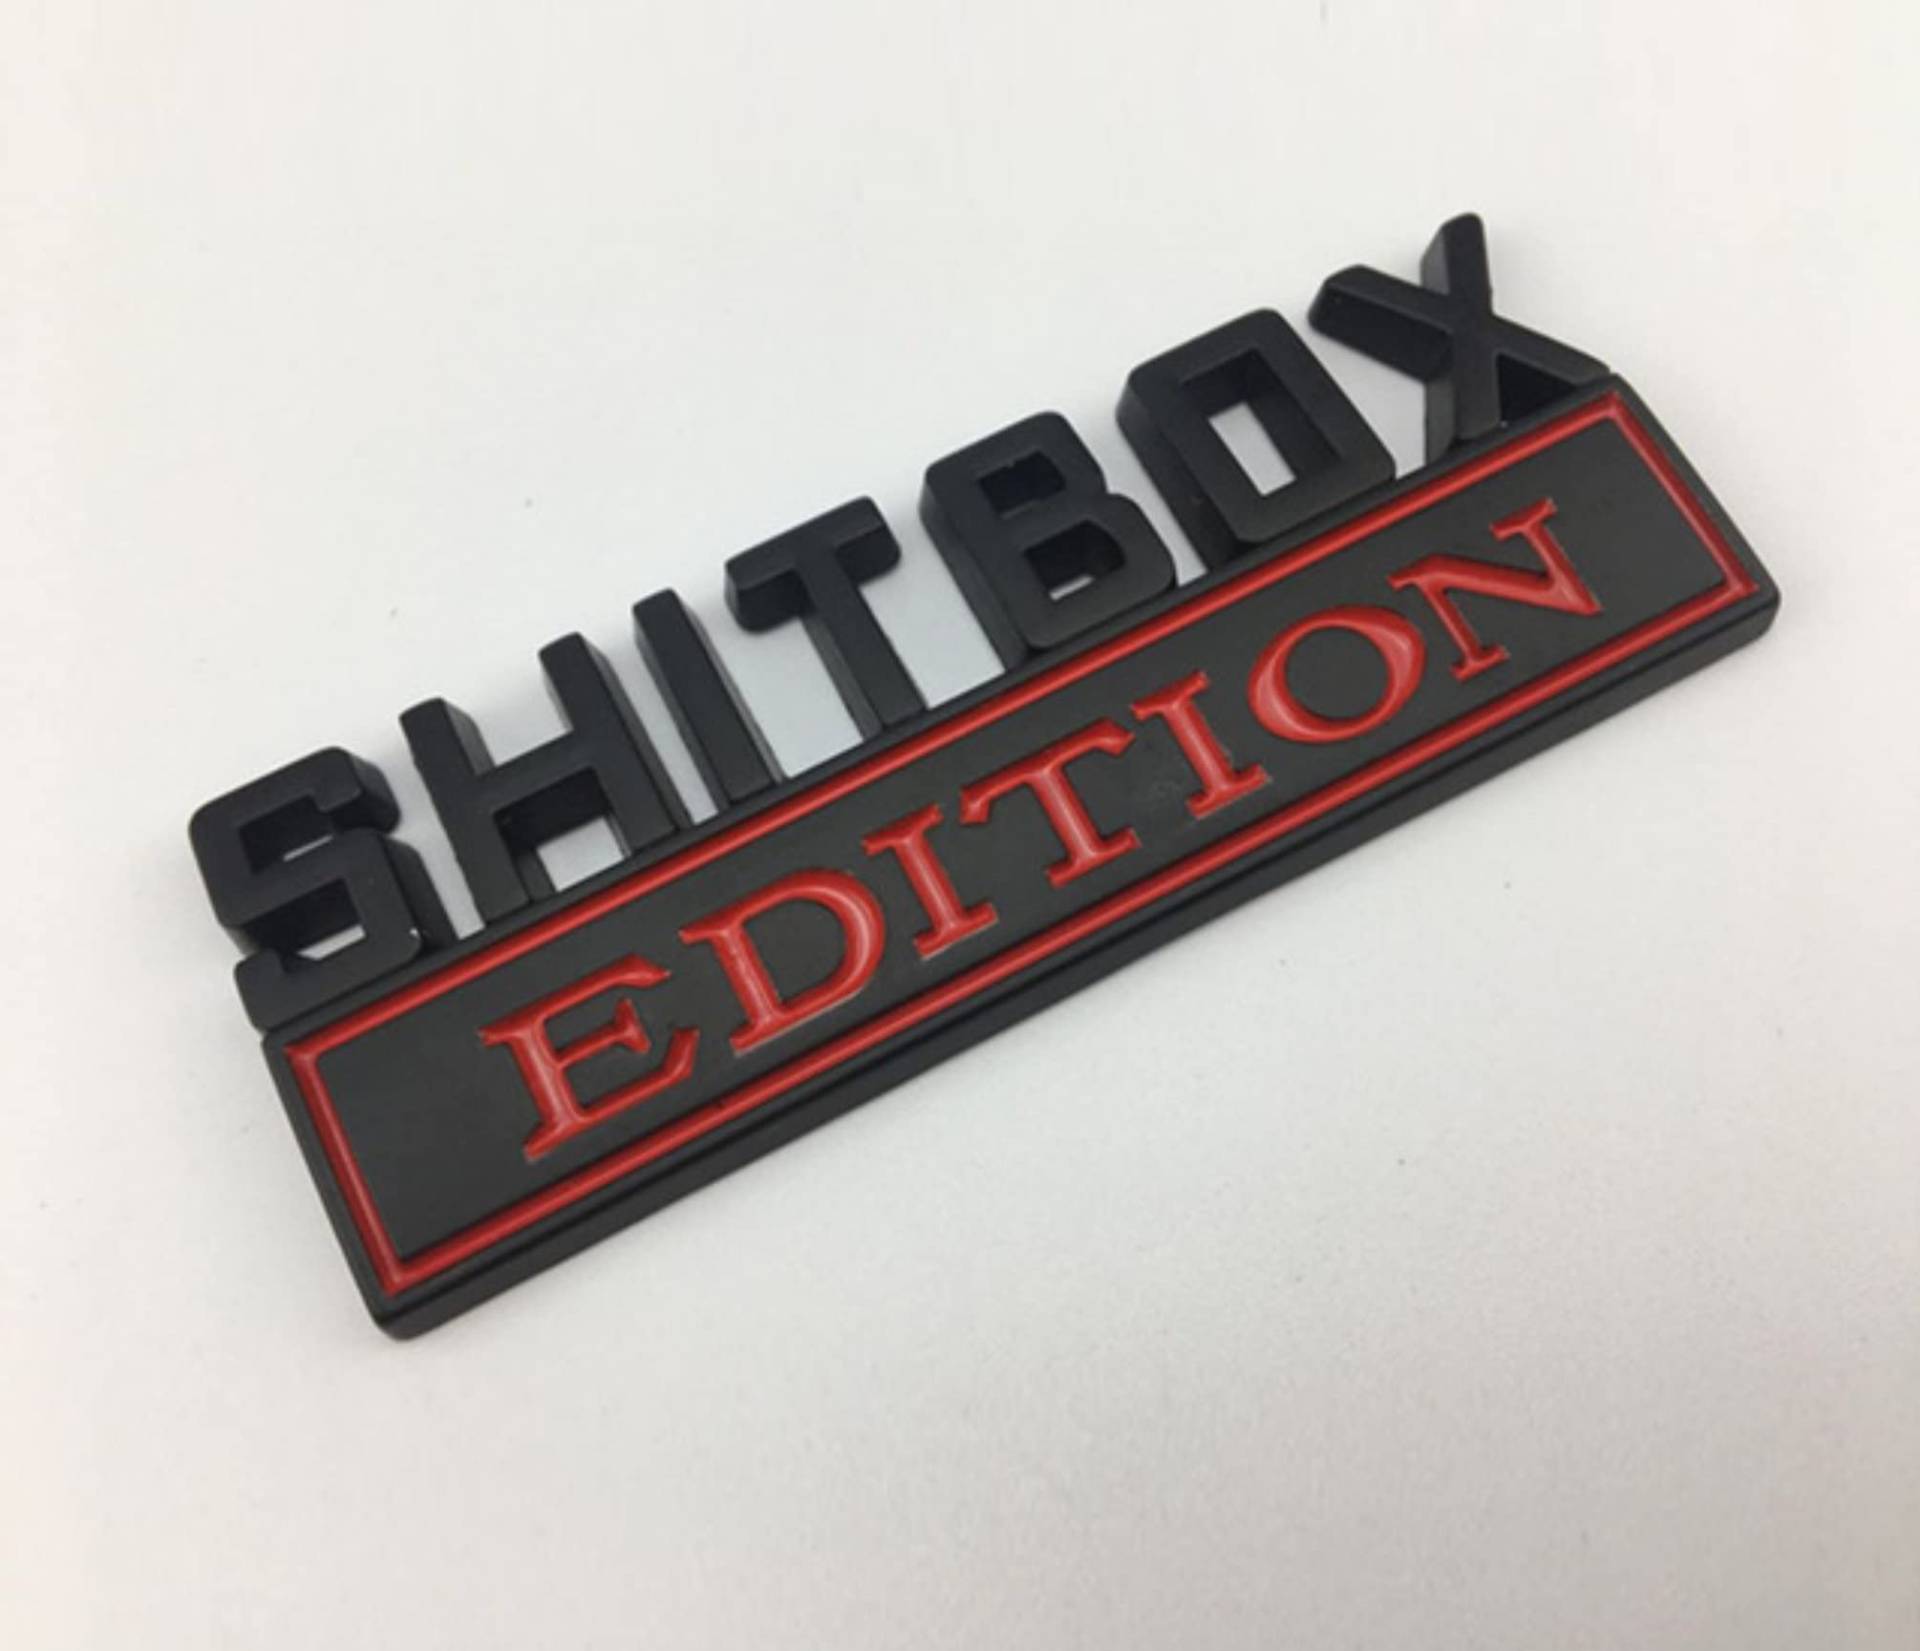 SHITBOX Edition - TRENDY CAR Emblem - ABS Auto Emblem Zeichen Symbol Aufkleber Sticker Abzeichen Marke (Rot Schwarz) von Streetculture